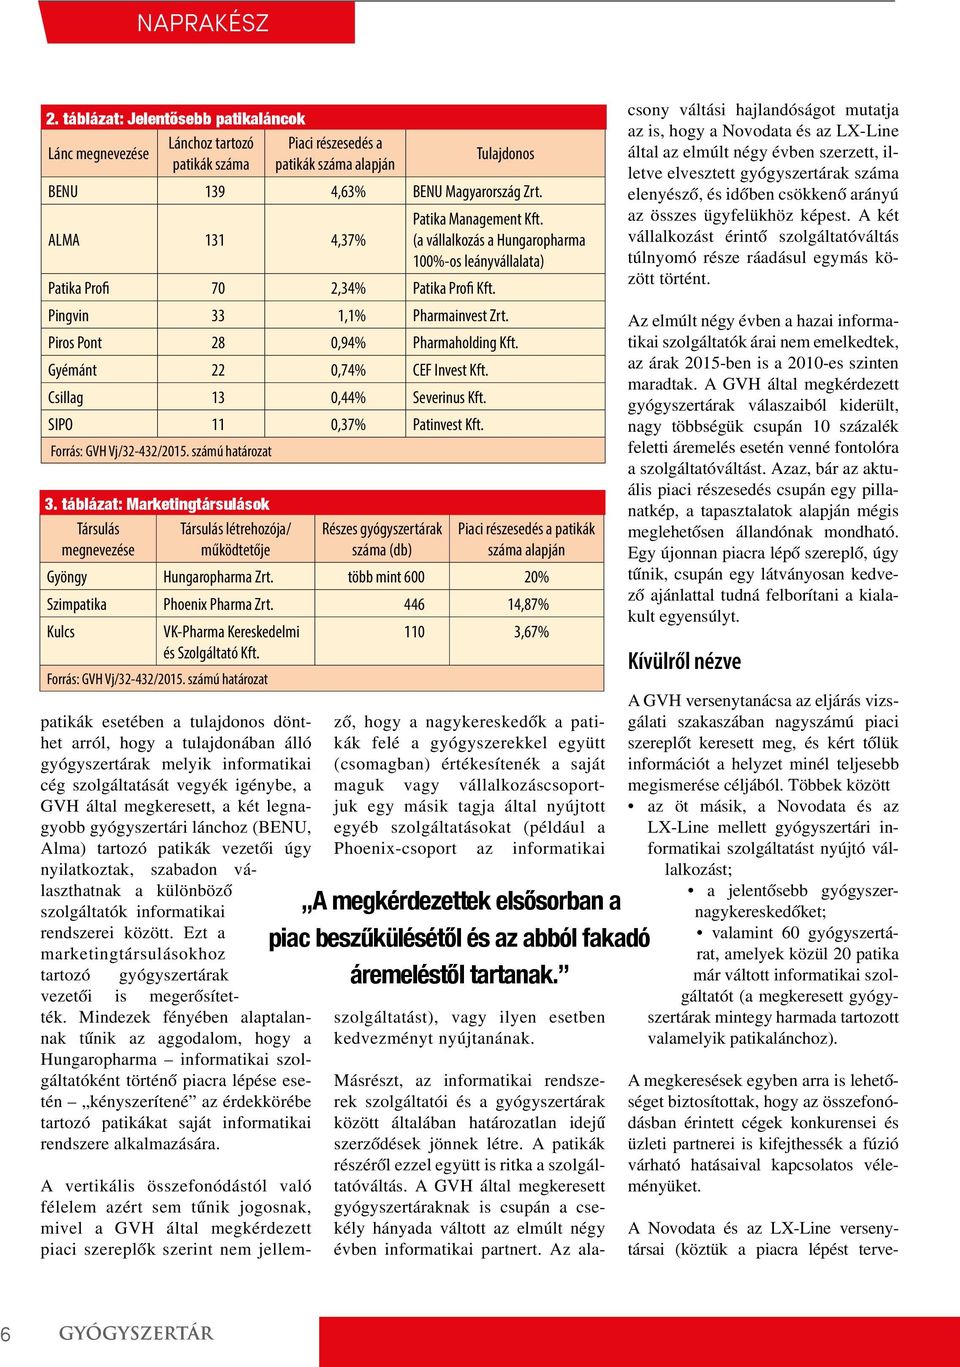 ALMA 131 4,37% Patika Management Kft. (a vállalkozás a Hungaropharma 100%-os leányvállalata) Patika Profi 70 2,34% Patika Profi Kft. Pingvin 33 1,1% Pharmainvest Zrt.